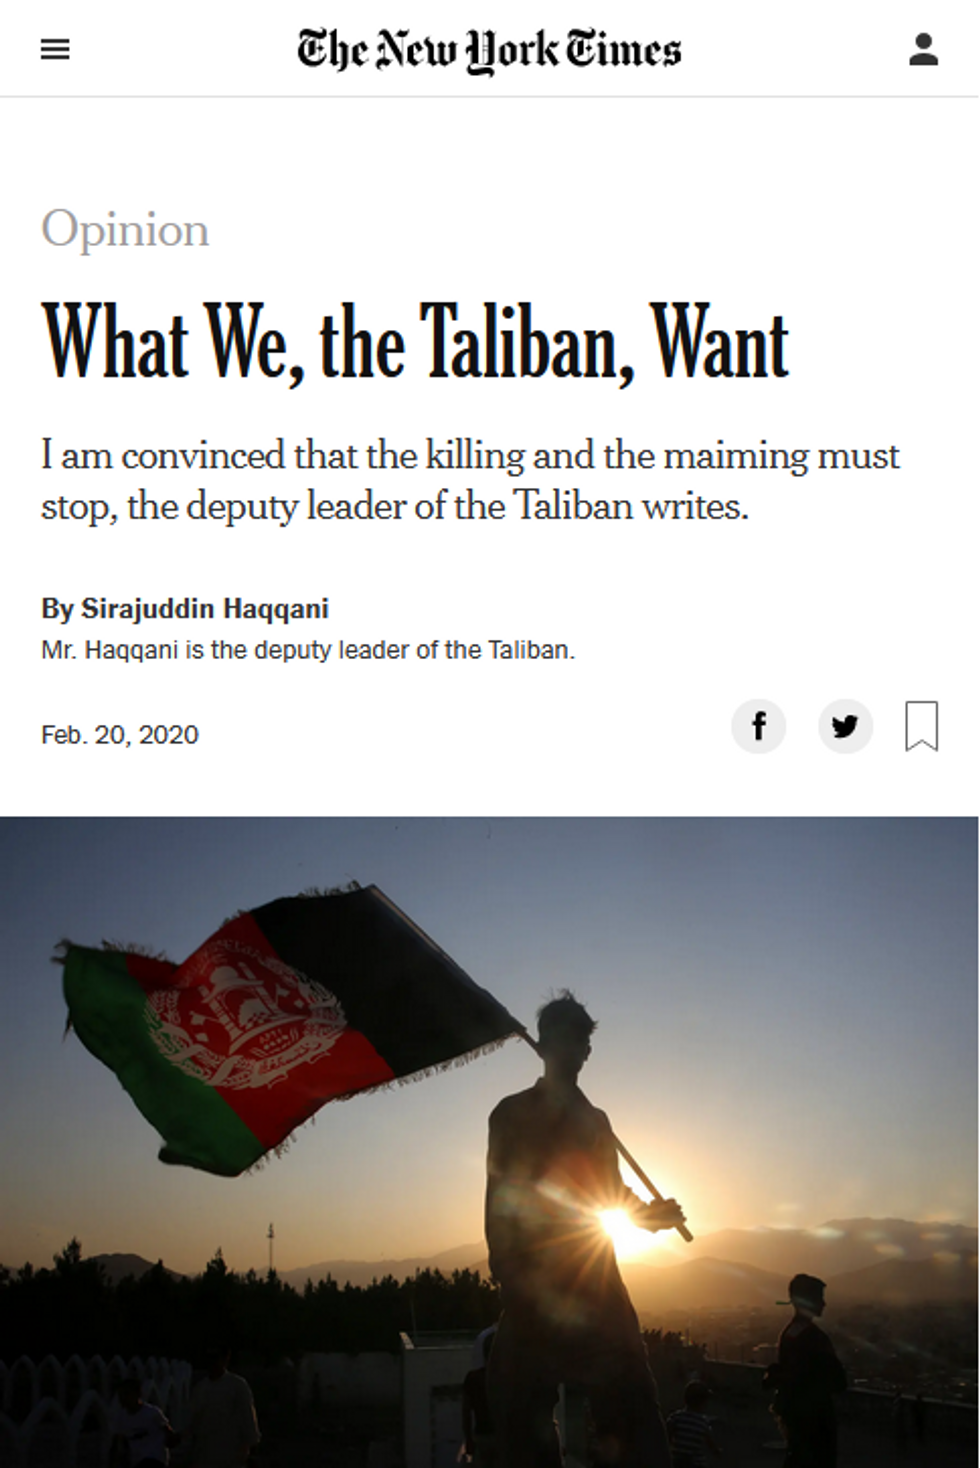 In a New York Times op-ed (2/20/20), Taliban deputy leader Sirajuddin Haqqani said the Taliban stuck with talks despite an